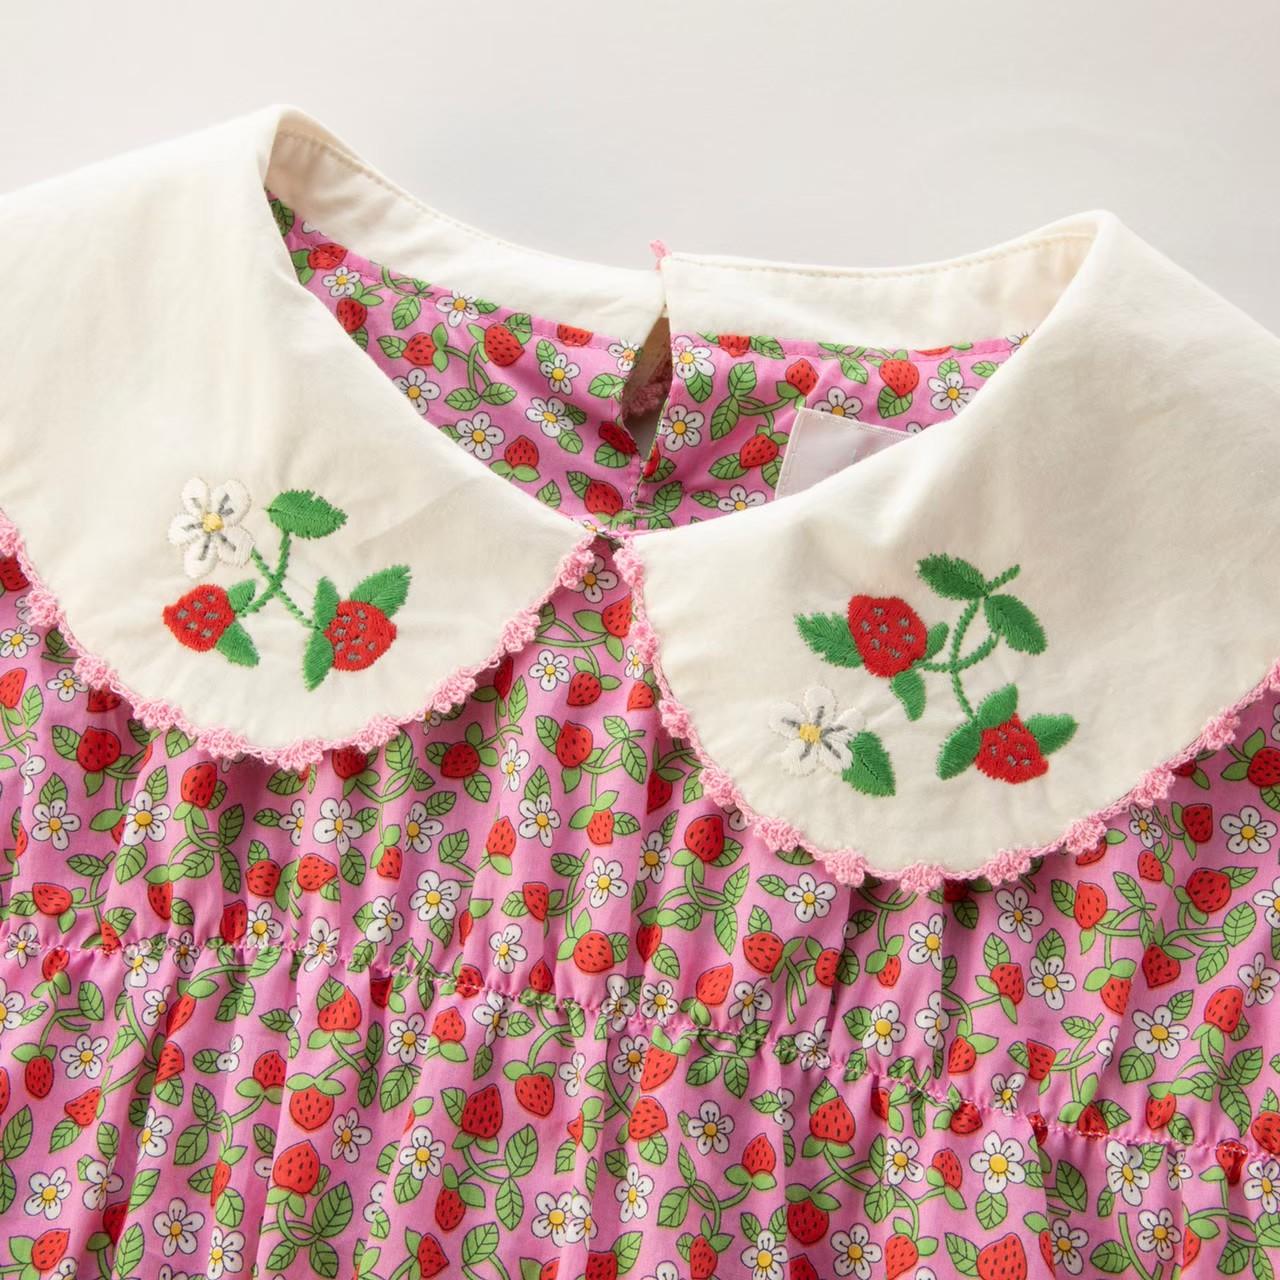 Jane Marple◇Strawberries and cream | BABY PINK MOON